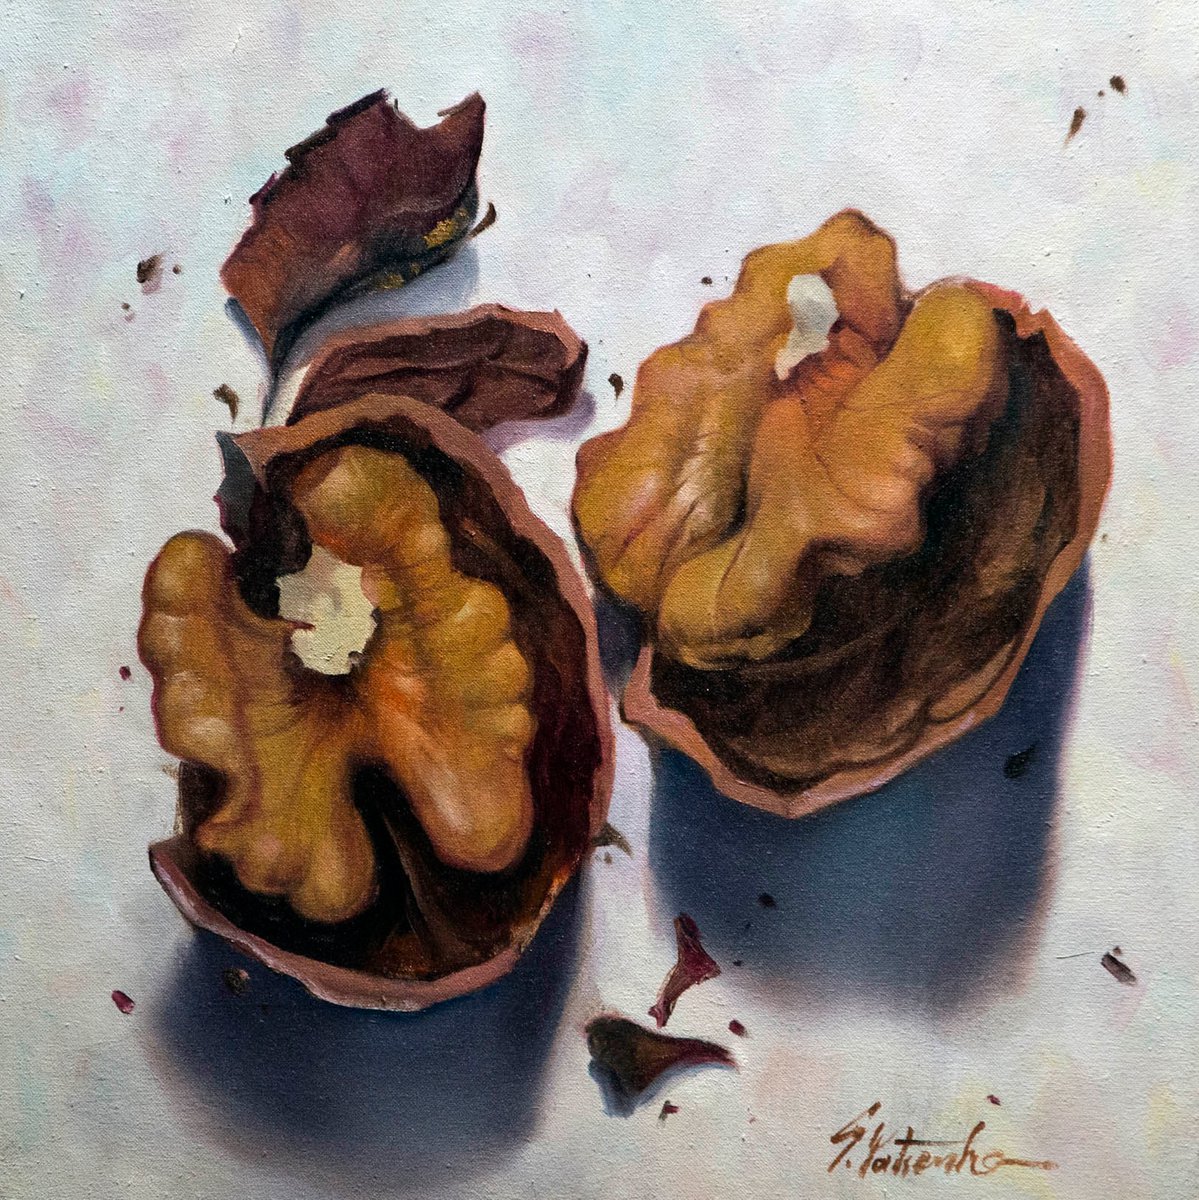 Broken nut by Sergei Yatsenko